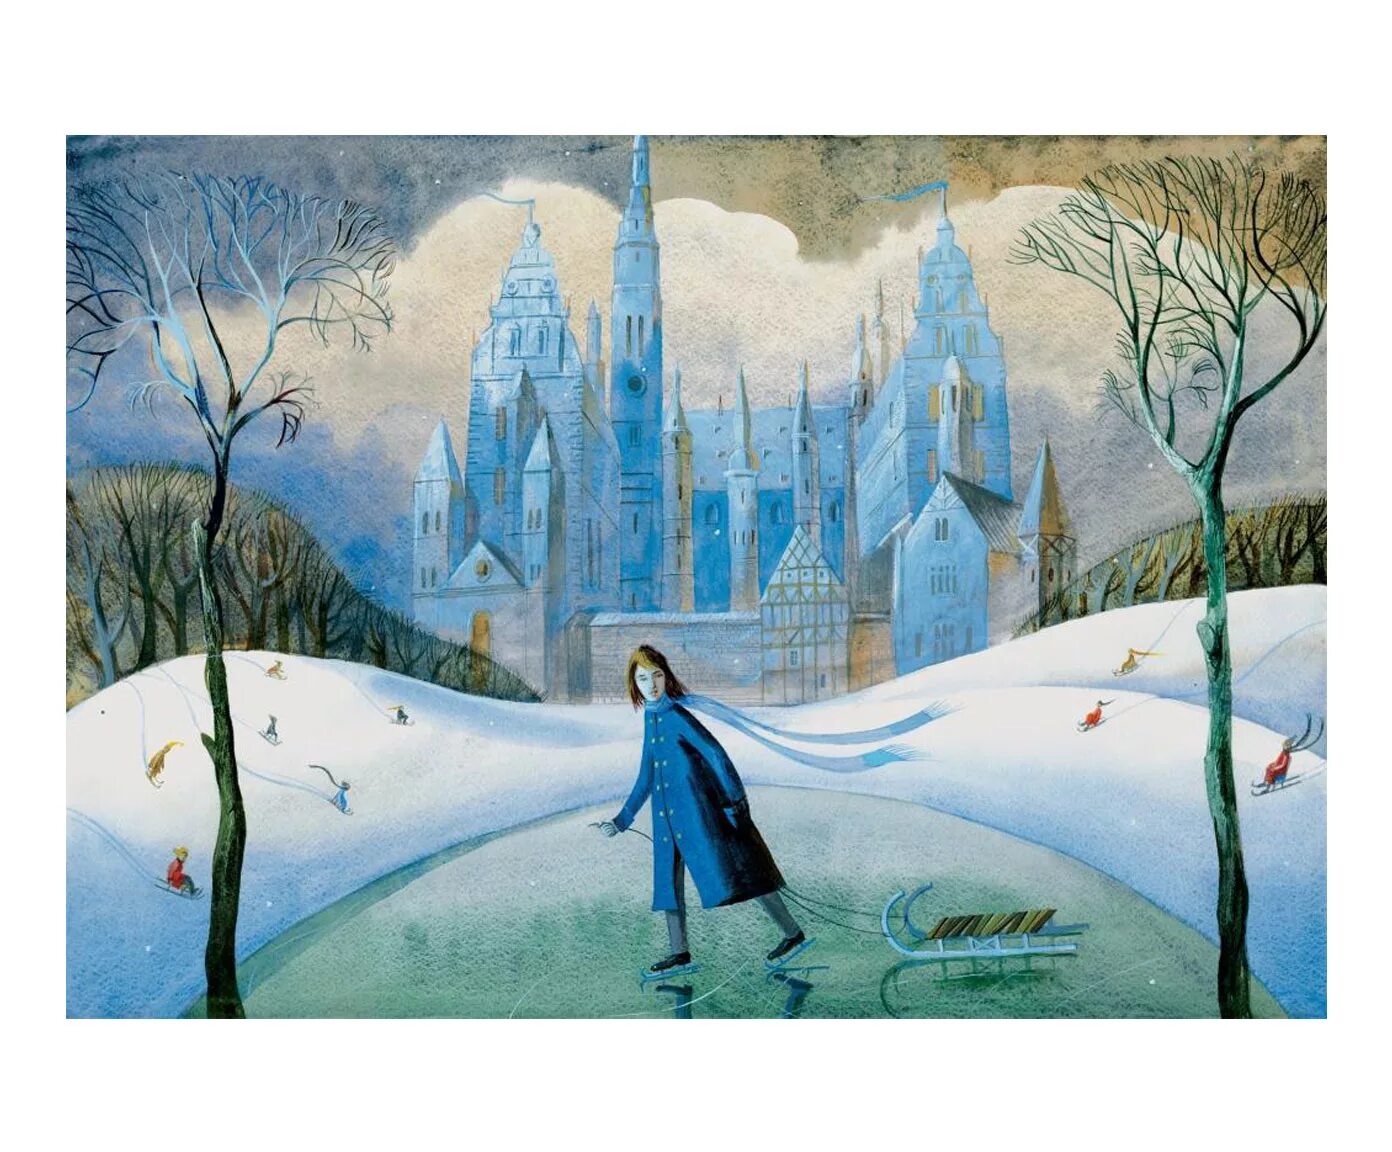 Рисунок к произведению снежная королева. Снежная Королева сказка Андерсена. Кристиан Бирмингем Снежная Королева.